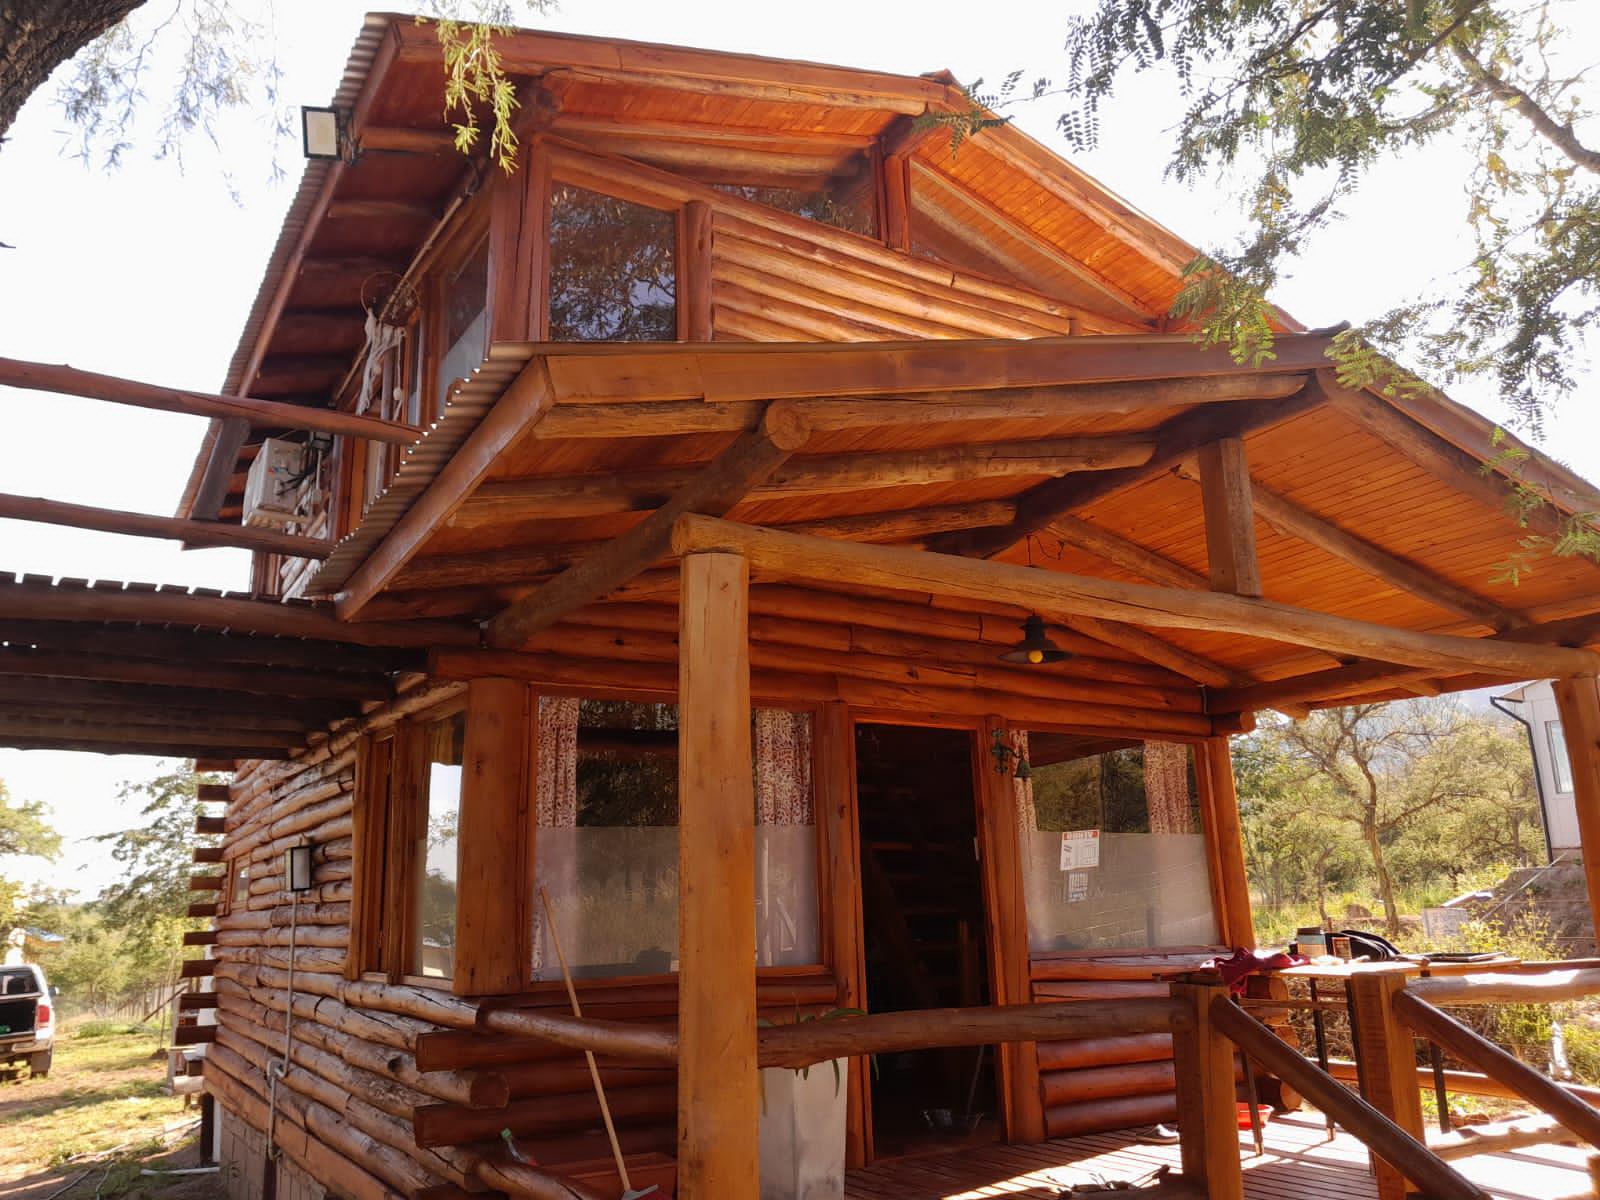 Casa en Santa Rosa De Calamuchita Cabaña de madera y tronco